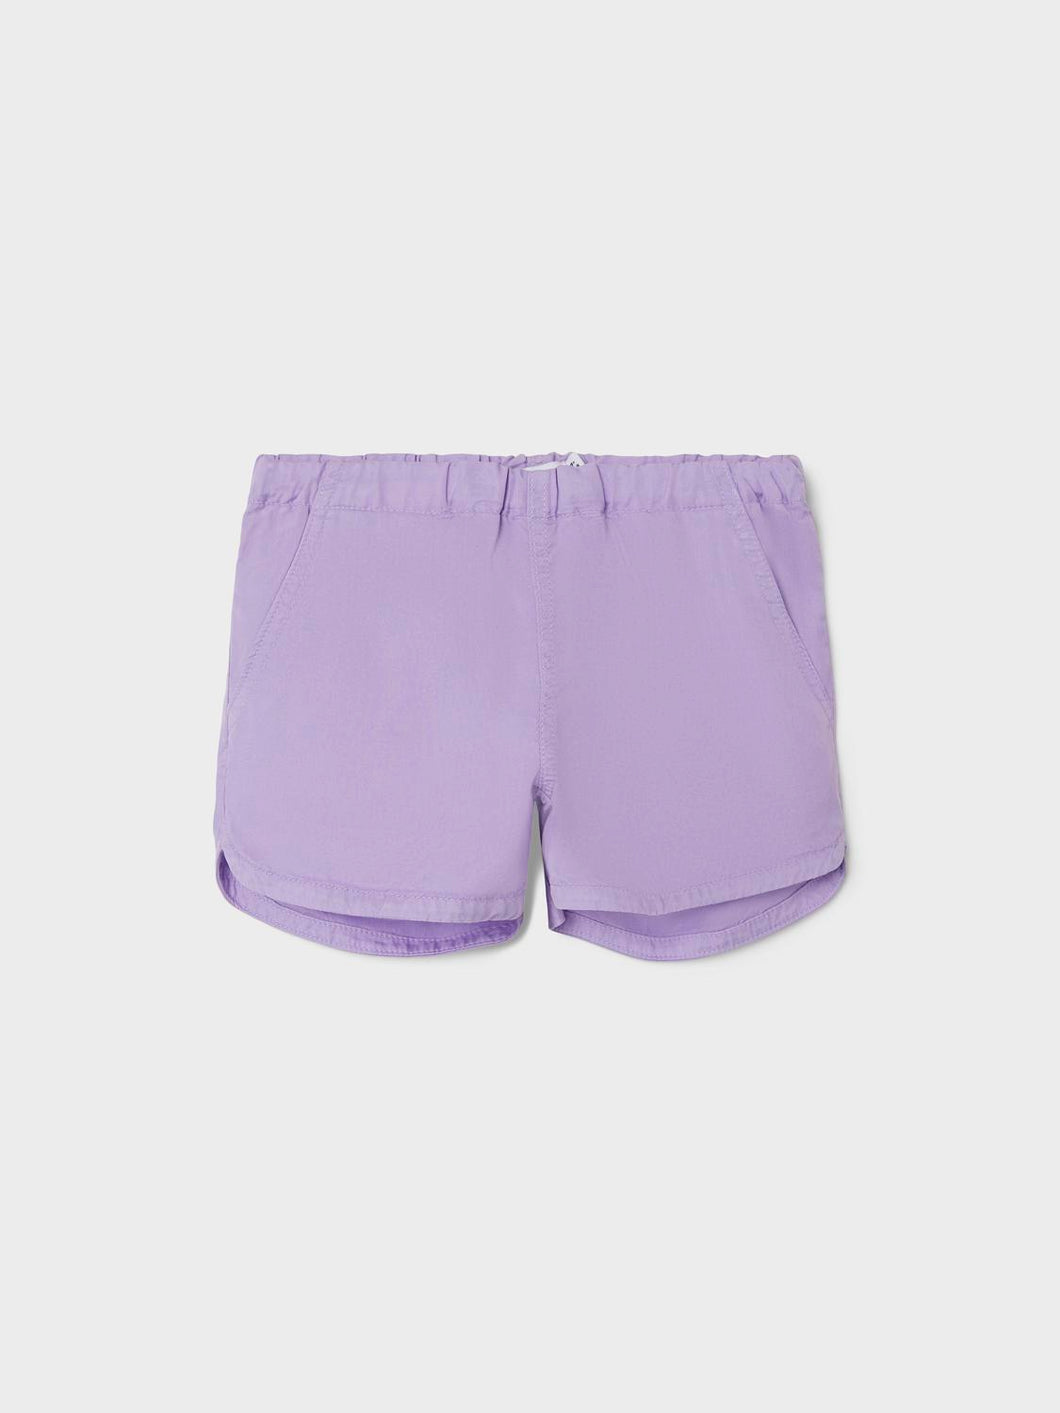 NKFBELLA Shorts - Lilac Breeze